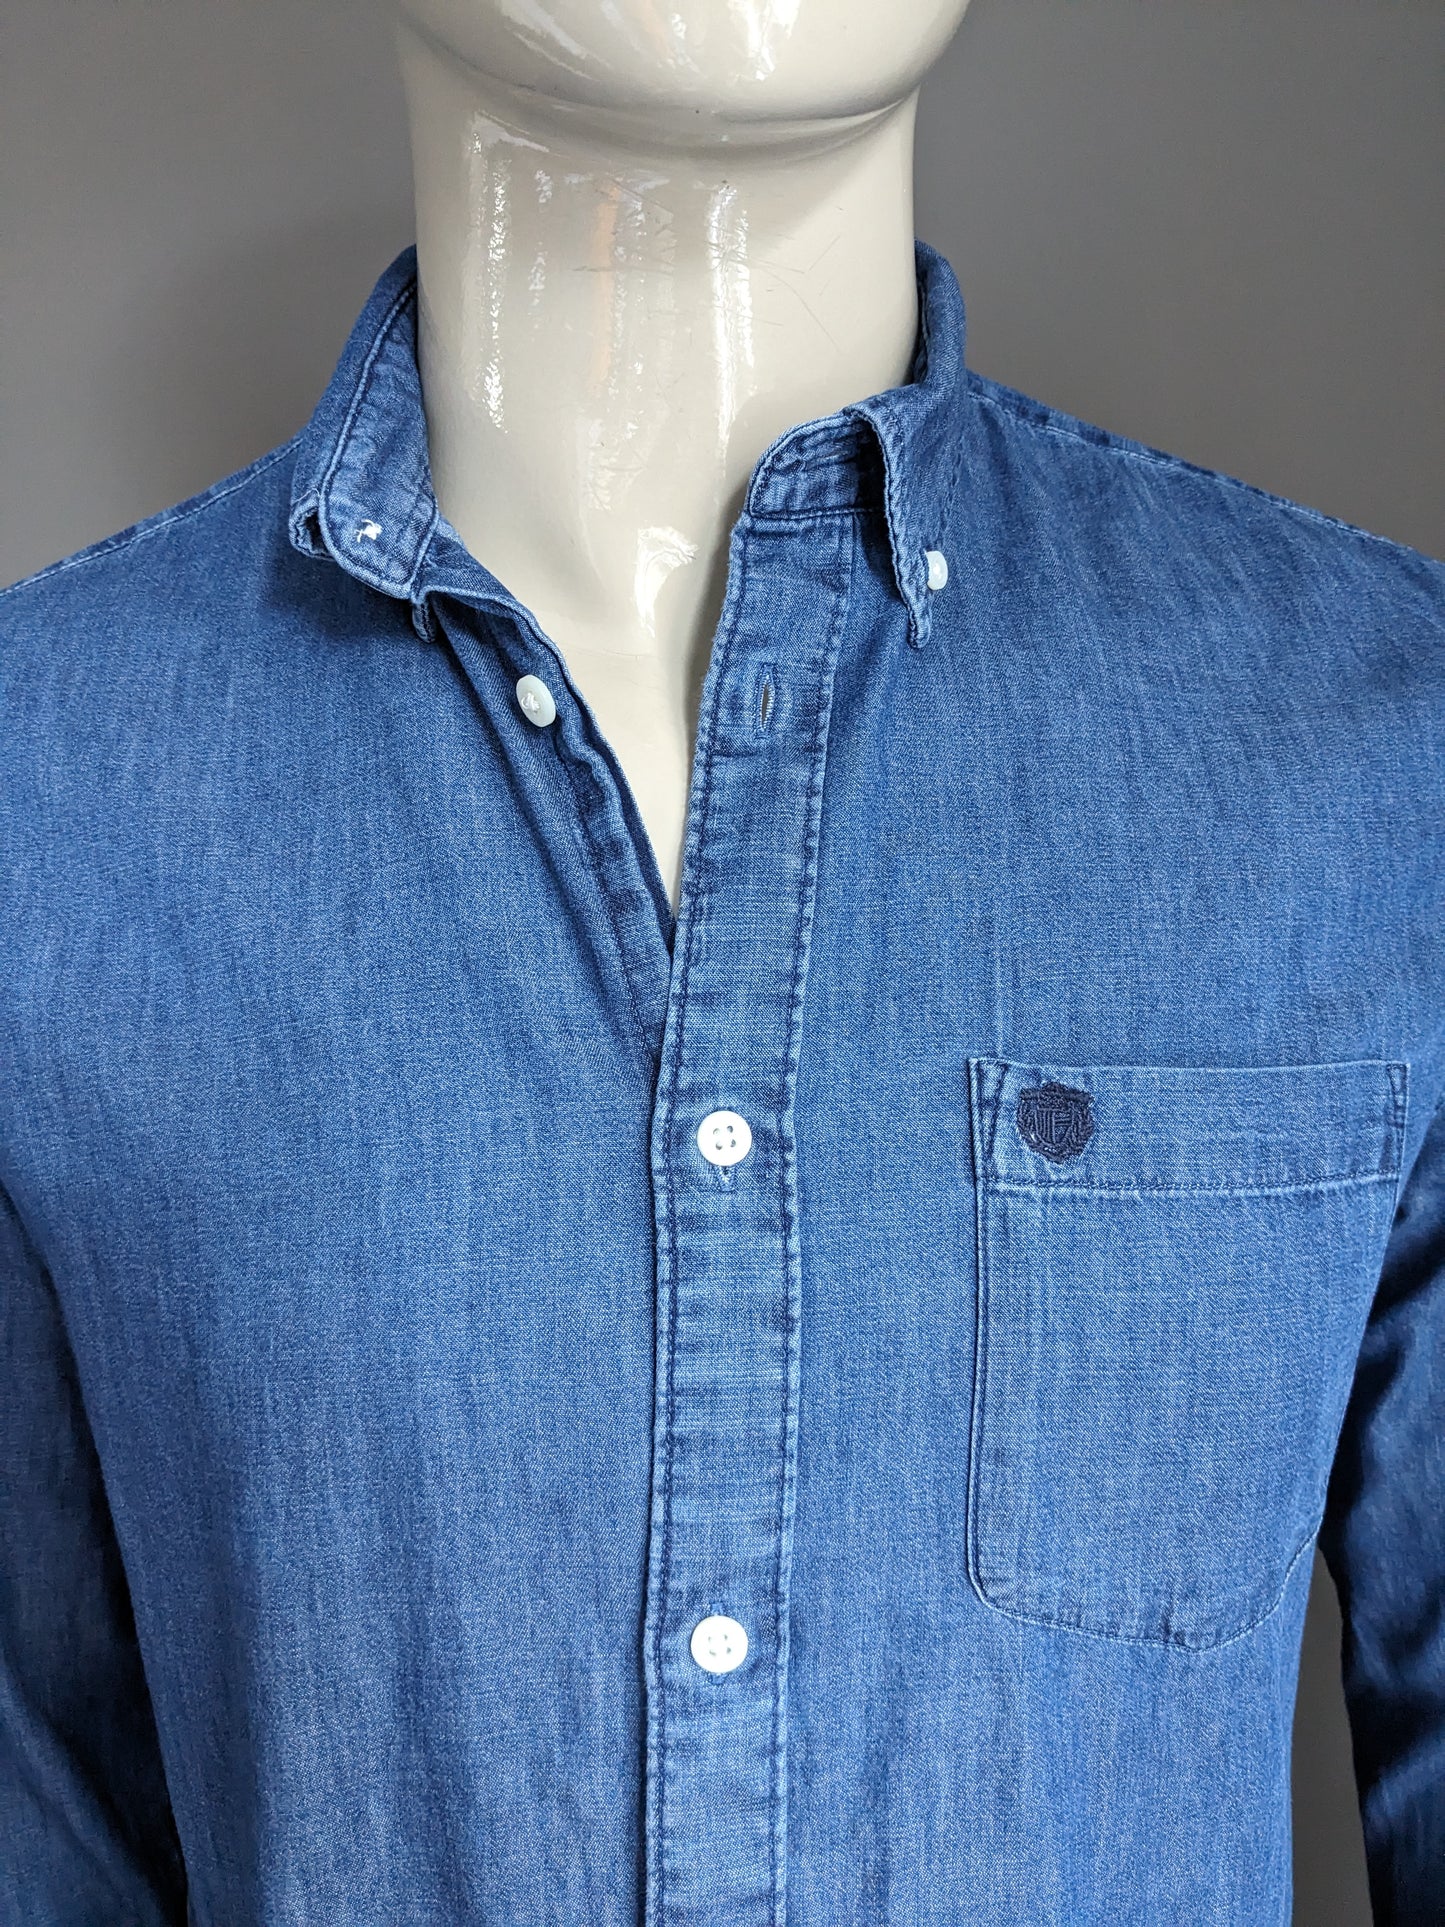 Ausgewählte Homme Jeans -Look -Shirt. Blau gefärbt. Größe M. Regelmäßige Passform.